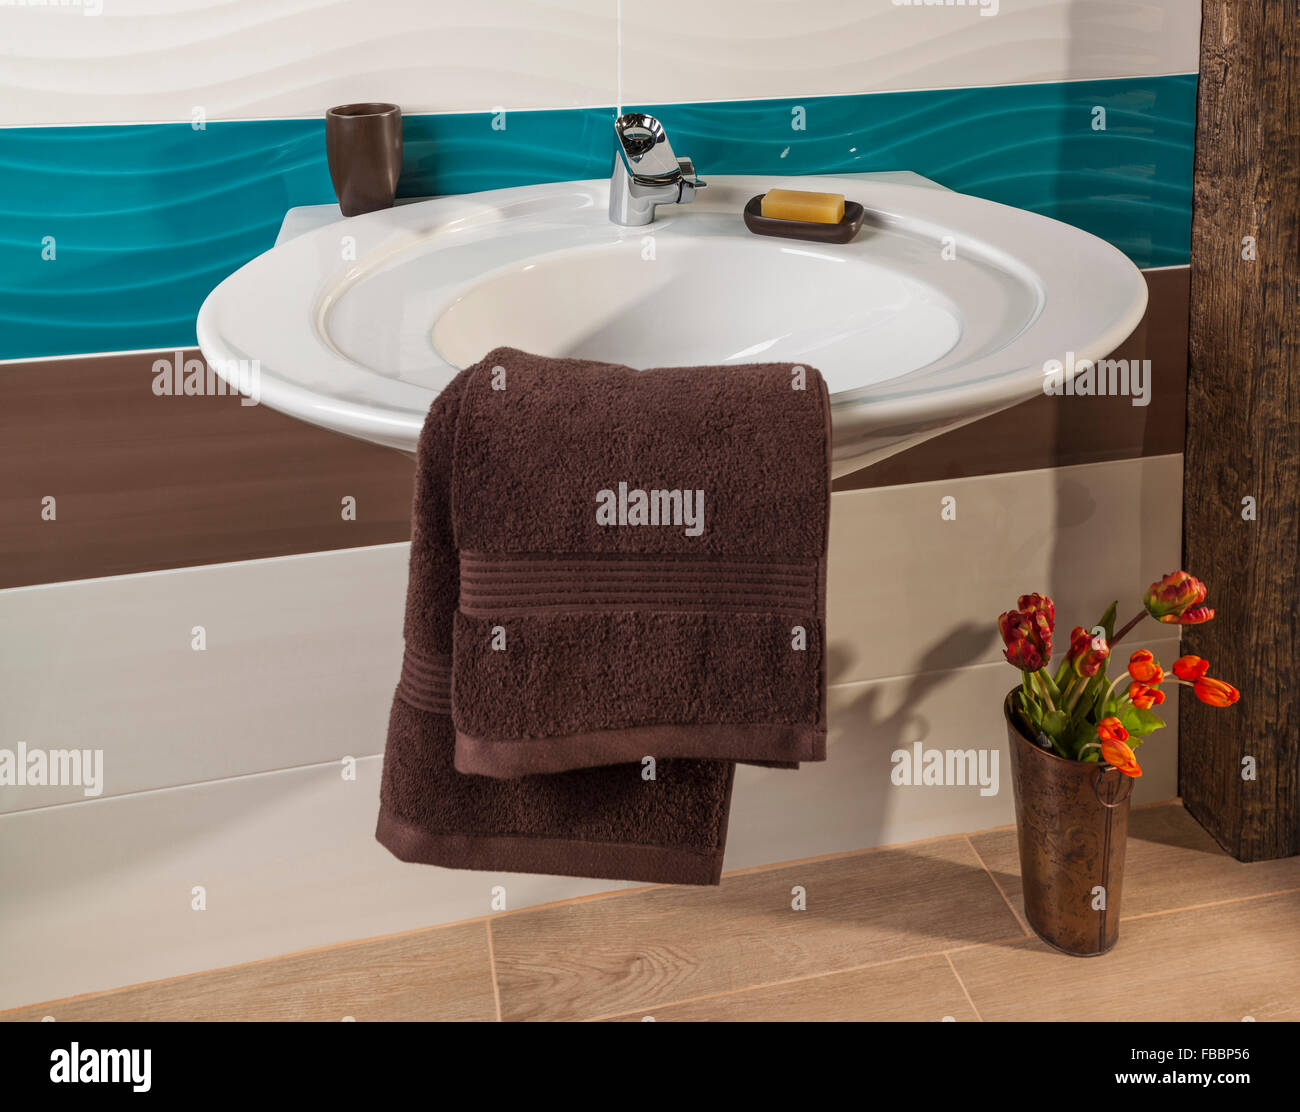 Lavabo dans une salle de bains moderne décorée avec des serviettes douces Banque D'Images